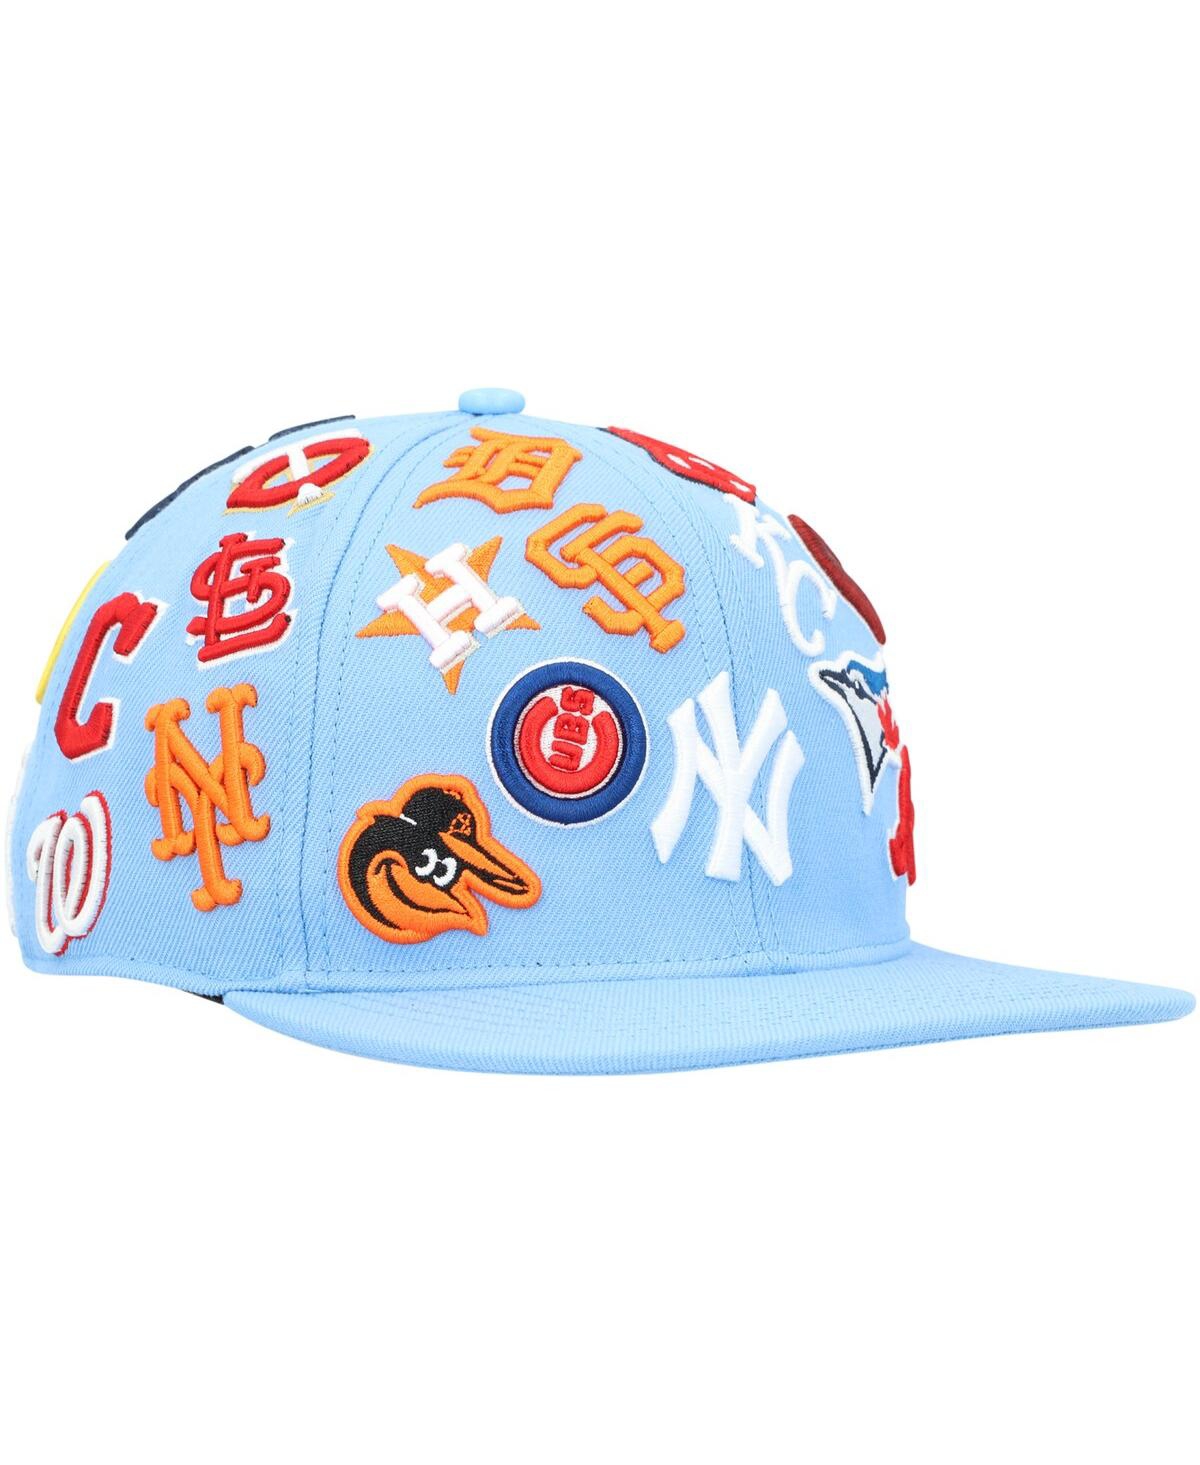 Shop Pro Standard Men's  Light Blue Mlb Pro League Wool Snapback Hat